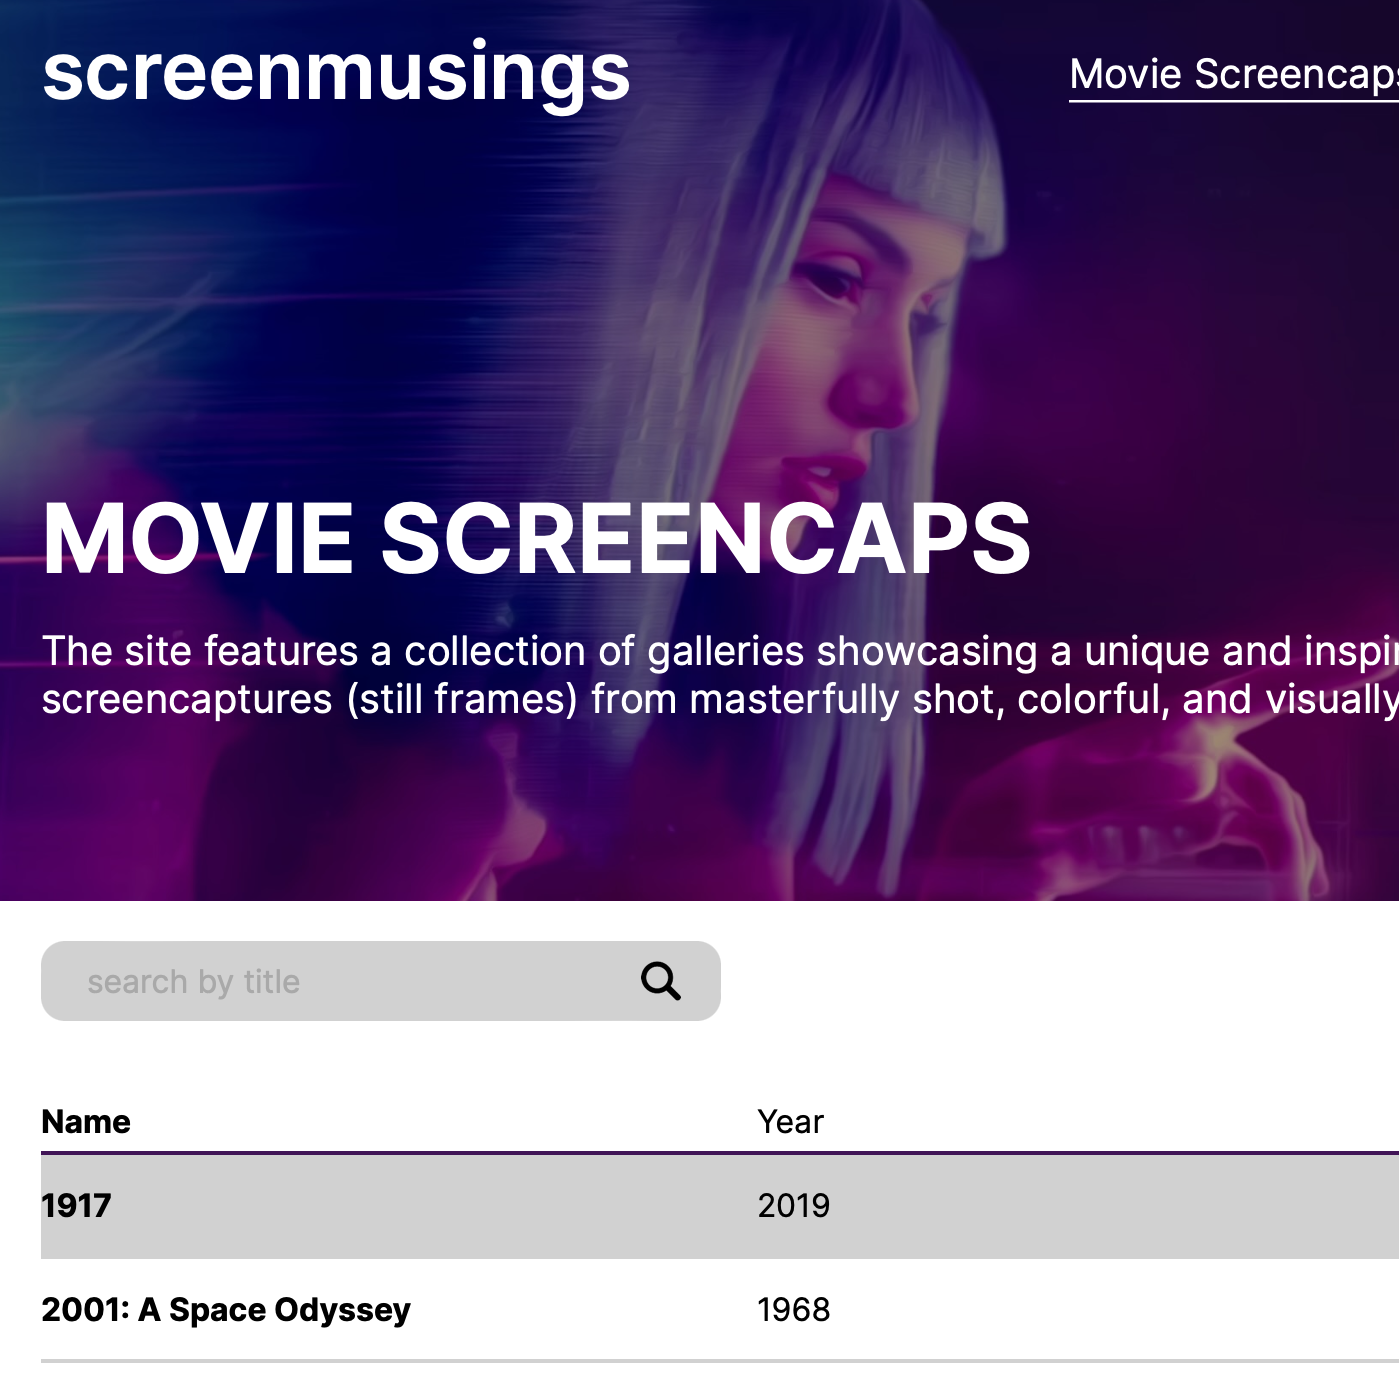 redesign of screenmusings website